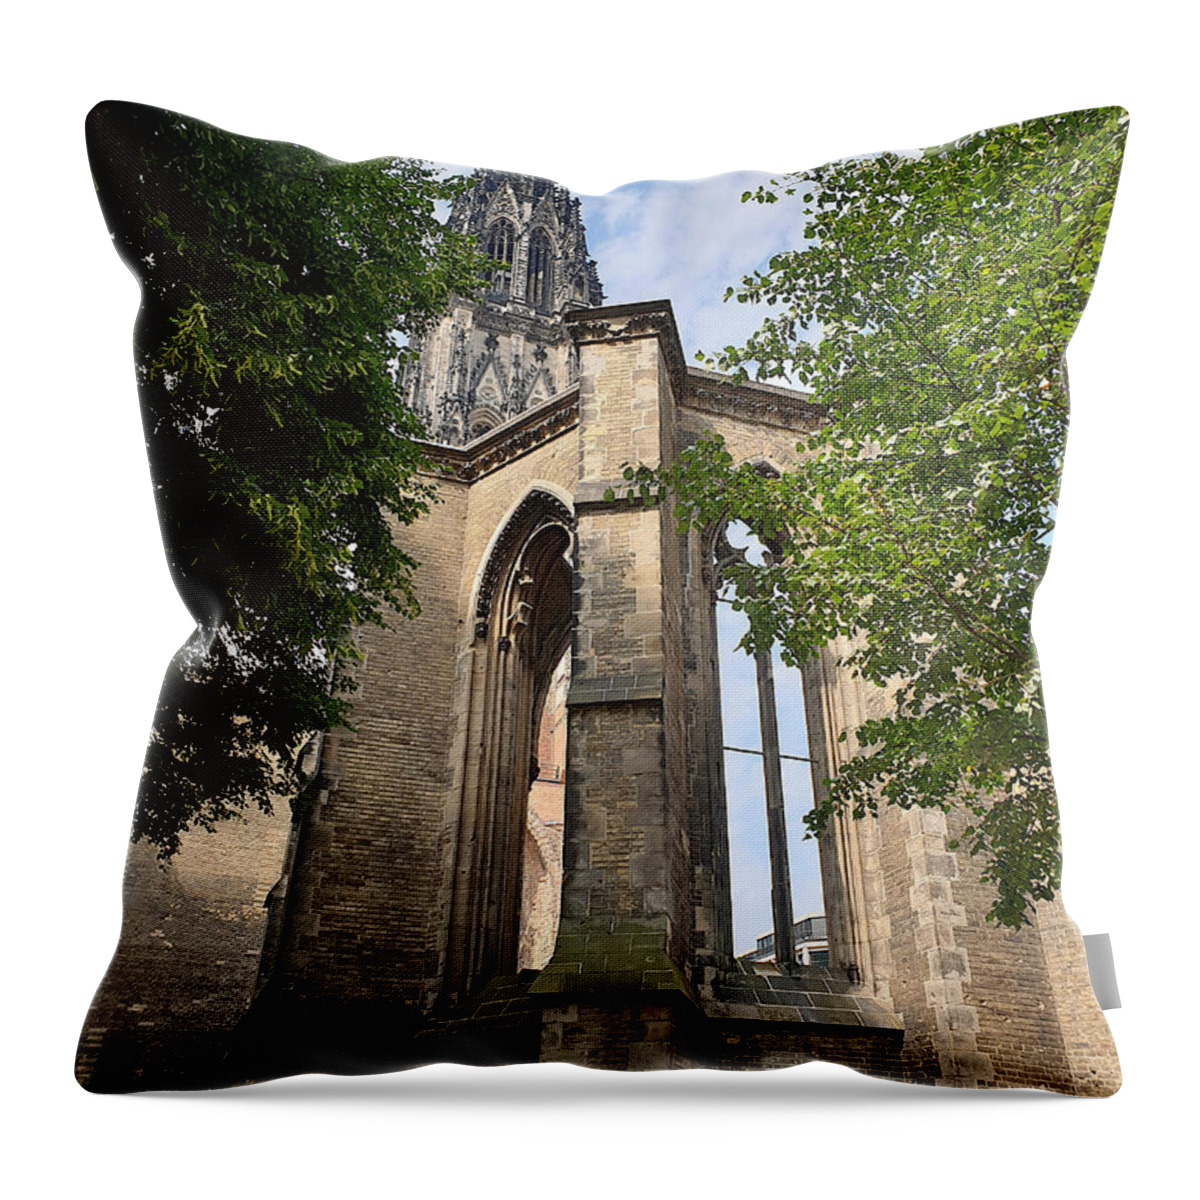 St. Nicholas Church Throw Pillow featuring the photograph St. Nikolai Church - Ruins, Hamburg by Yvonne Johnstone